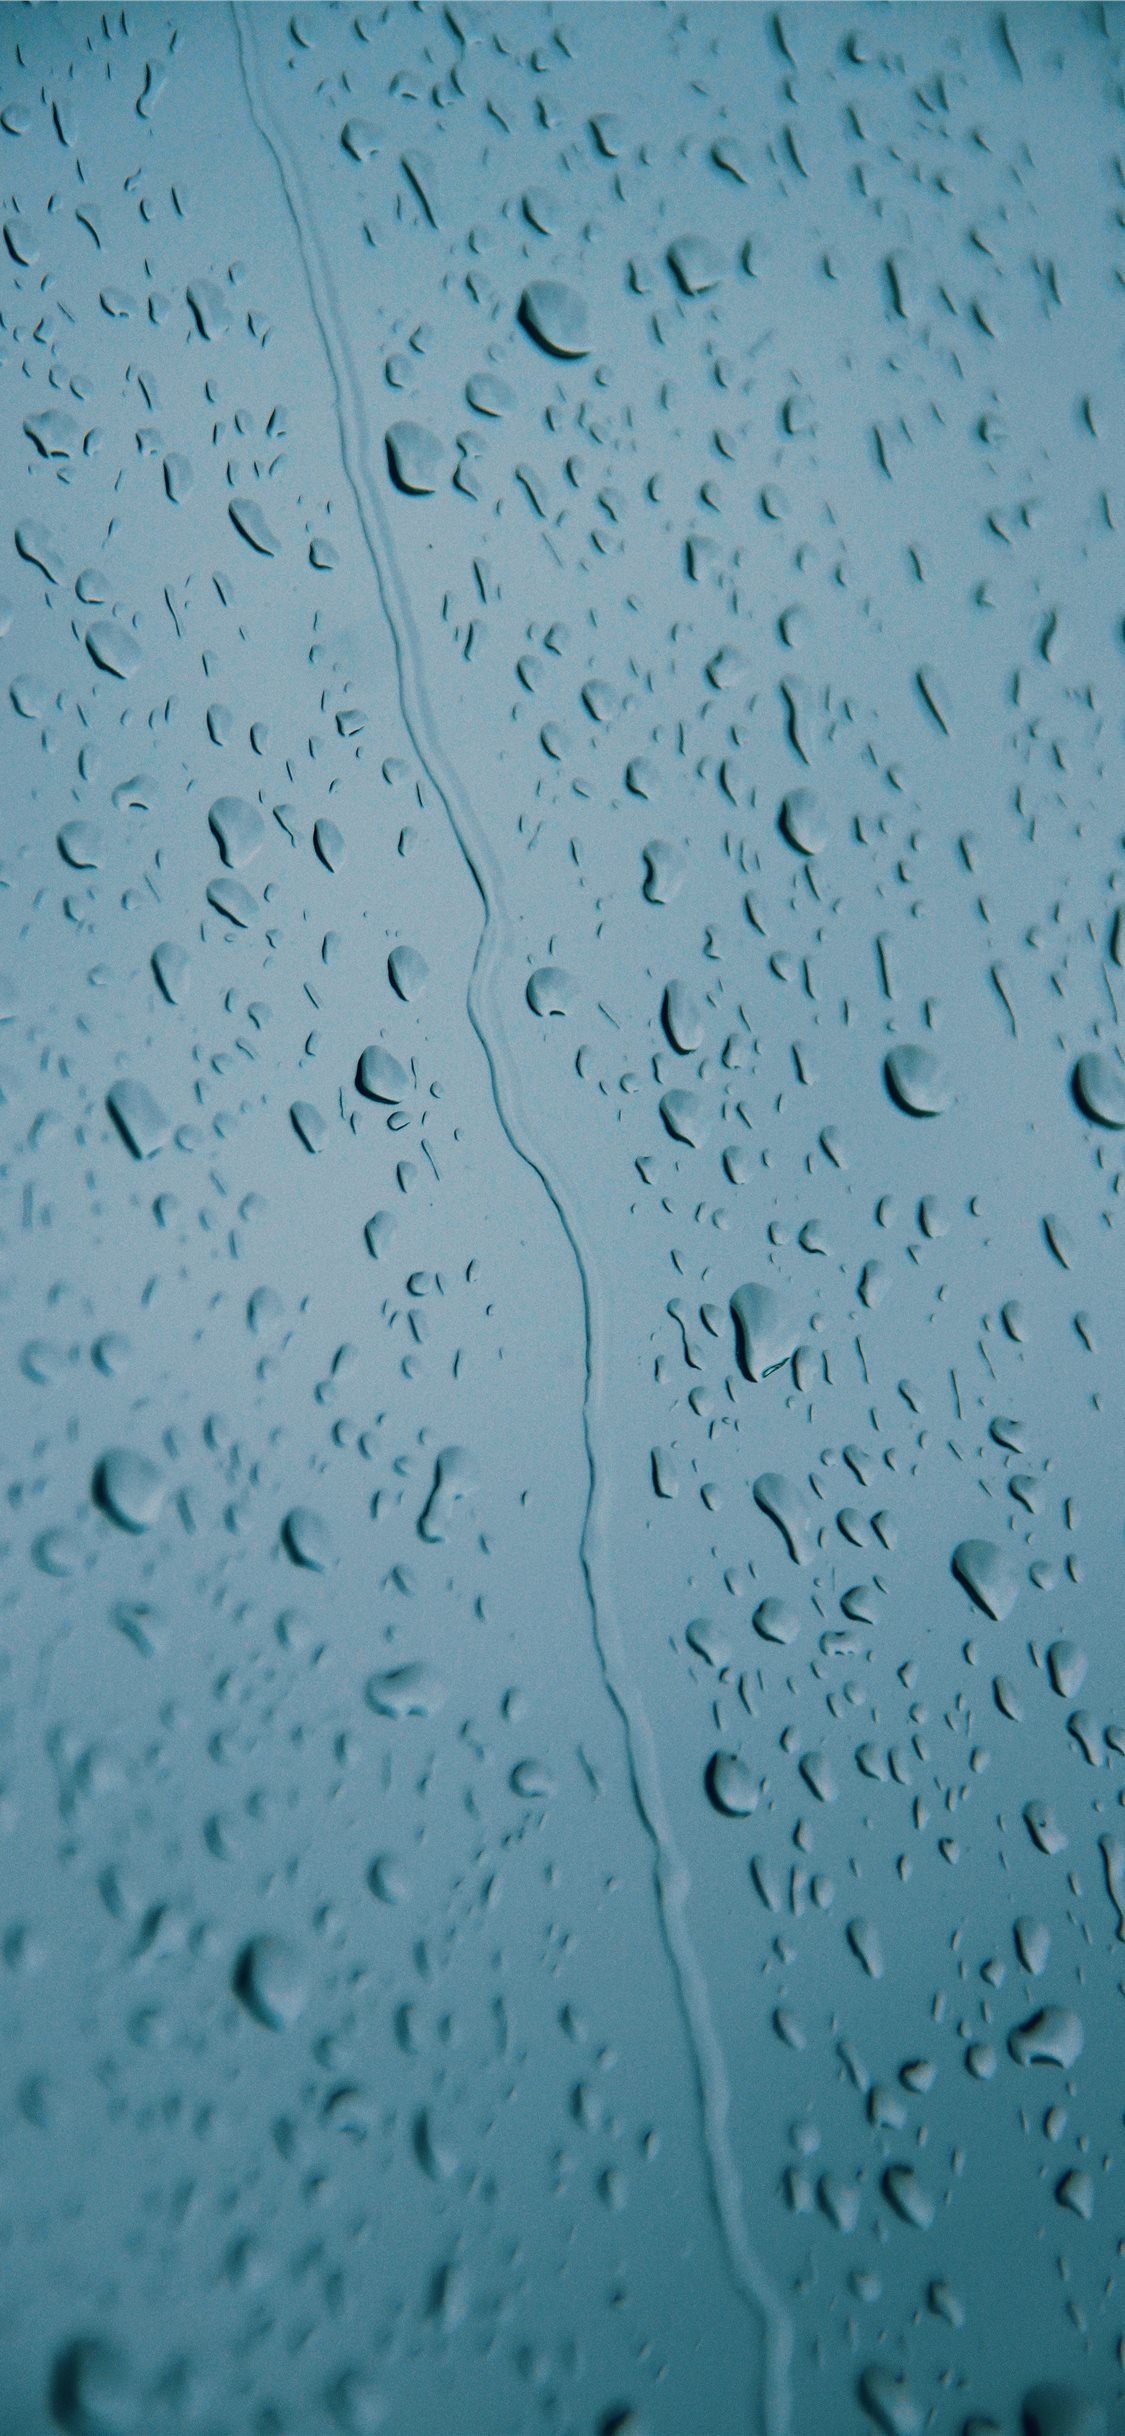 Water Drops iPhone 5 Wallpaper by prose7en on DeviantArt